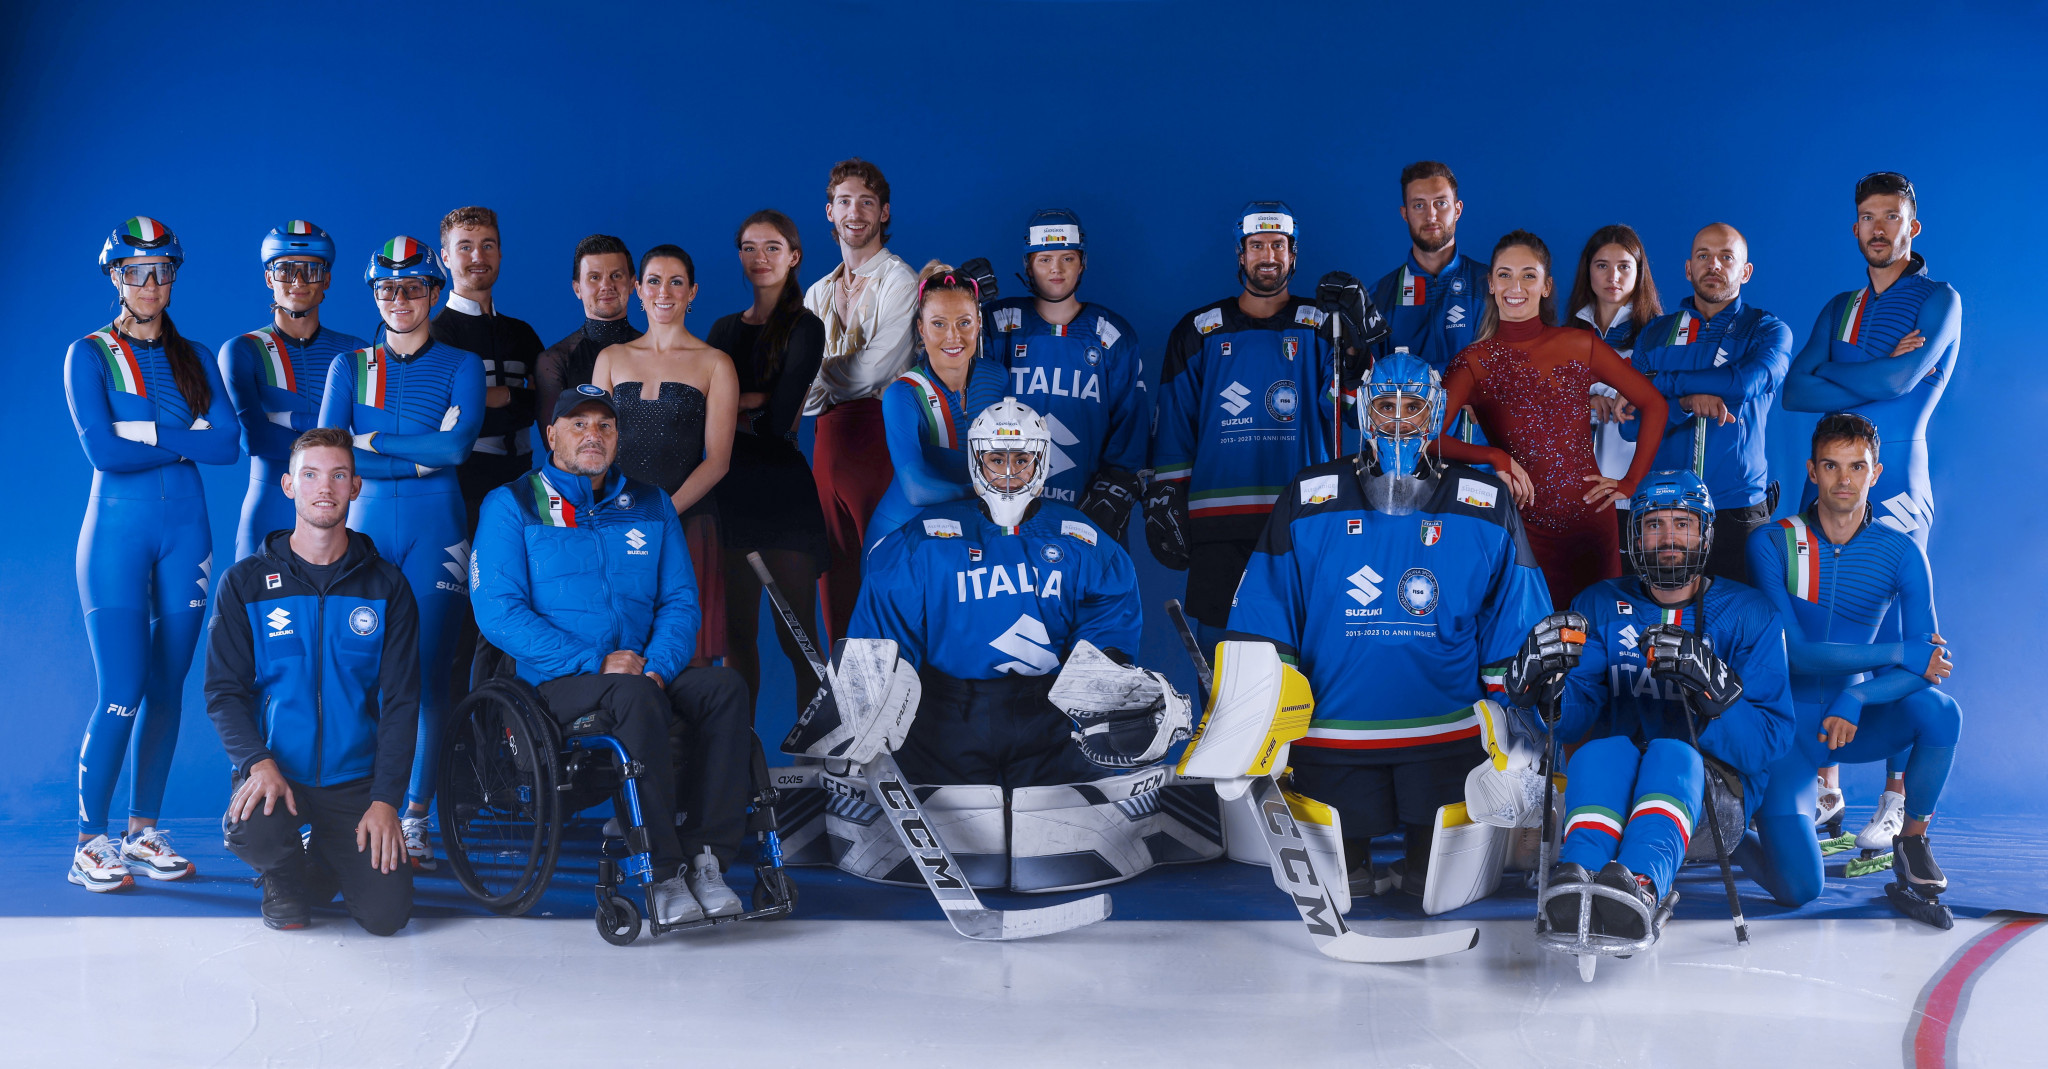 Participação dos atletas da NHL em Milão Cortina 2026 está bem